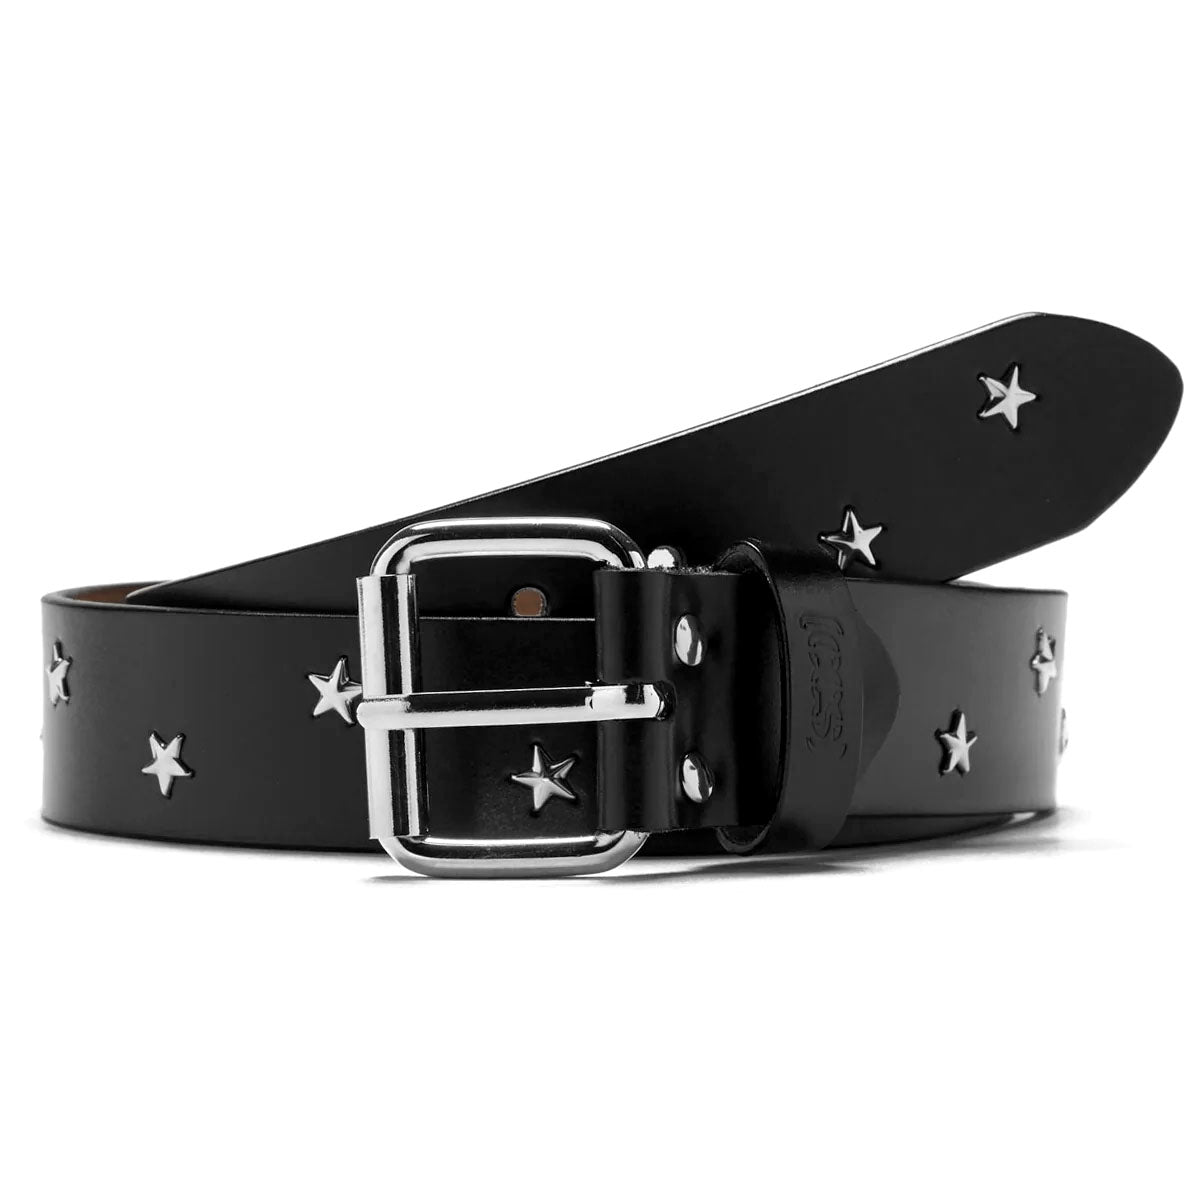 CCS Star Studded Leather Belt - Black image 1